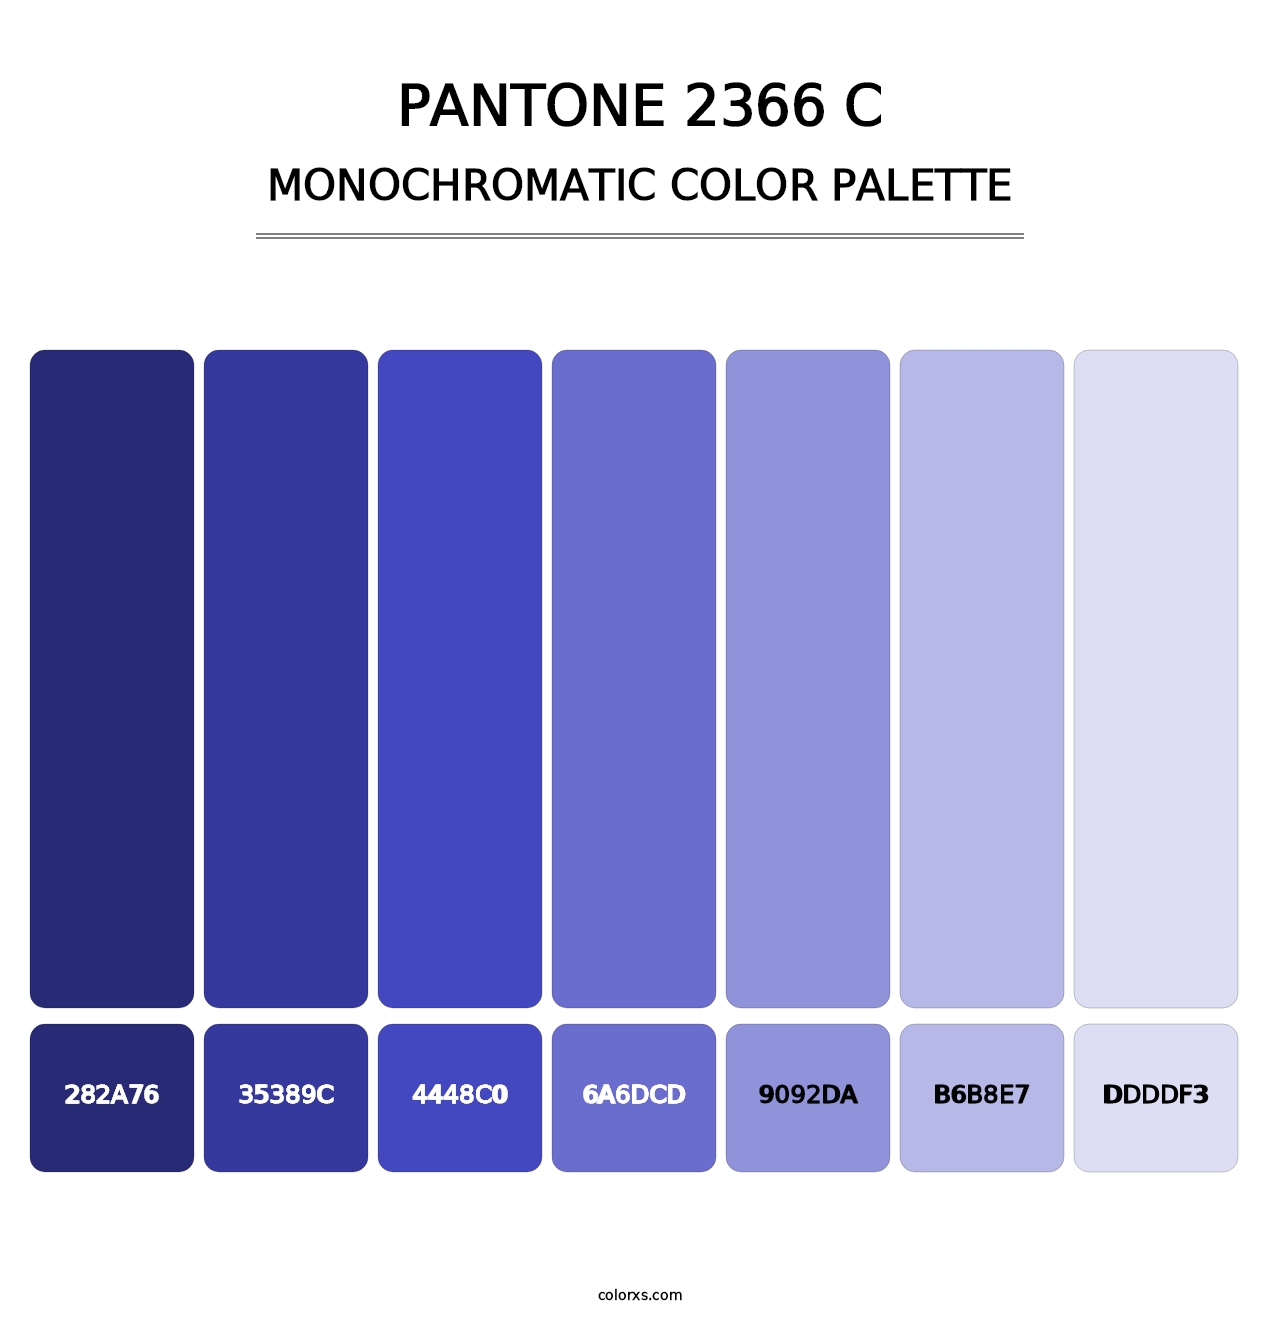 PANTONE 2366 C - Monochromatic Color Palette